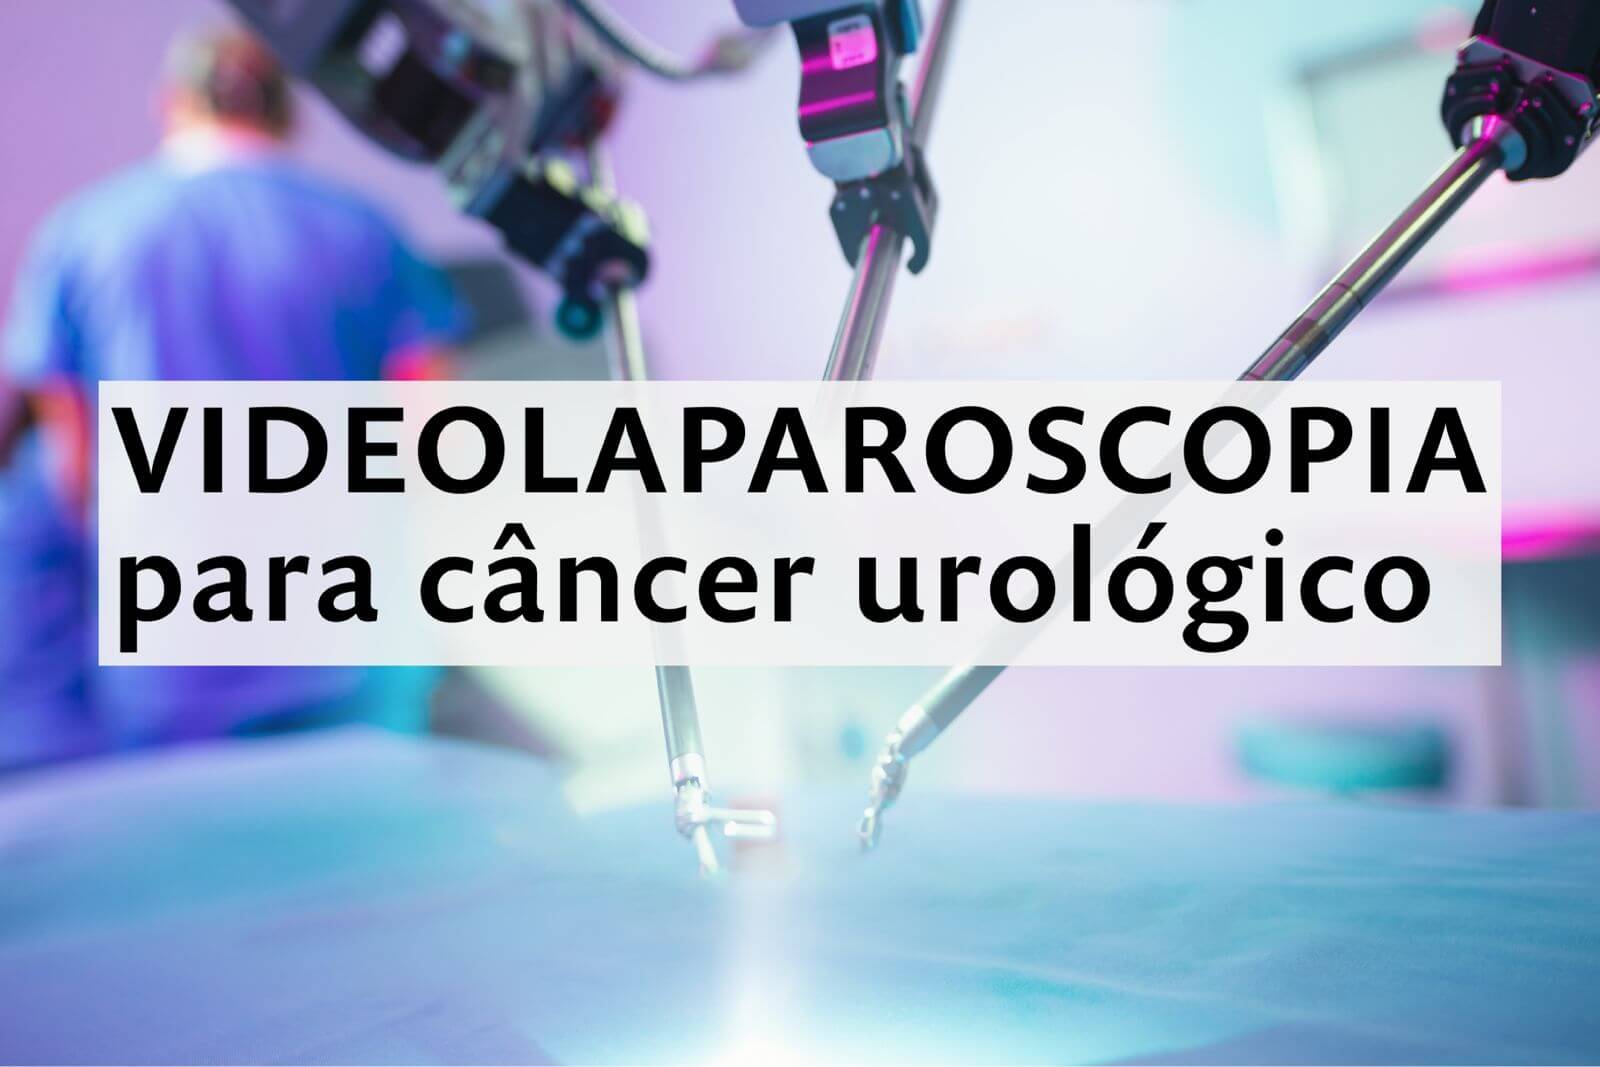 Videolaparoscopia para câncer urológico